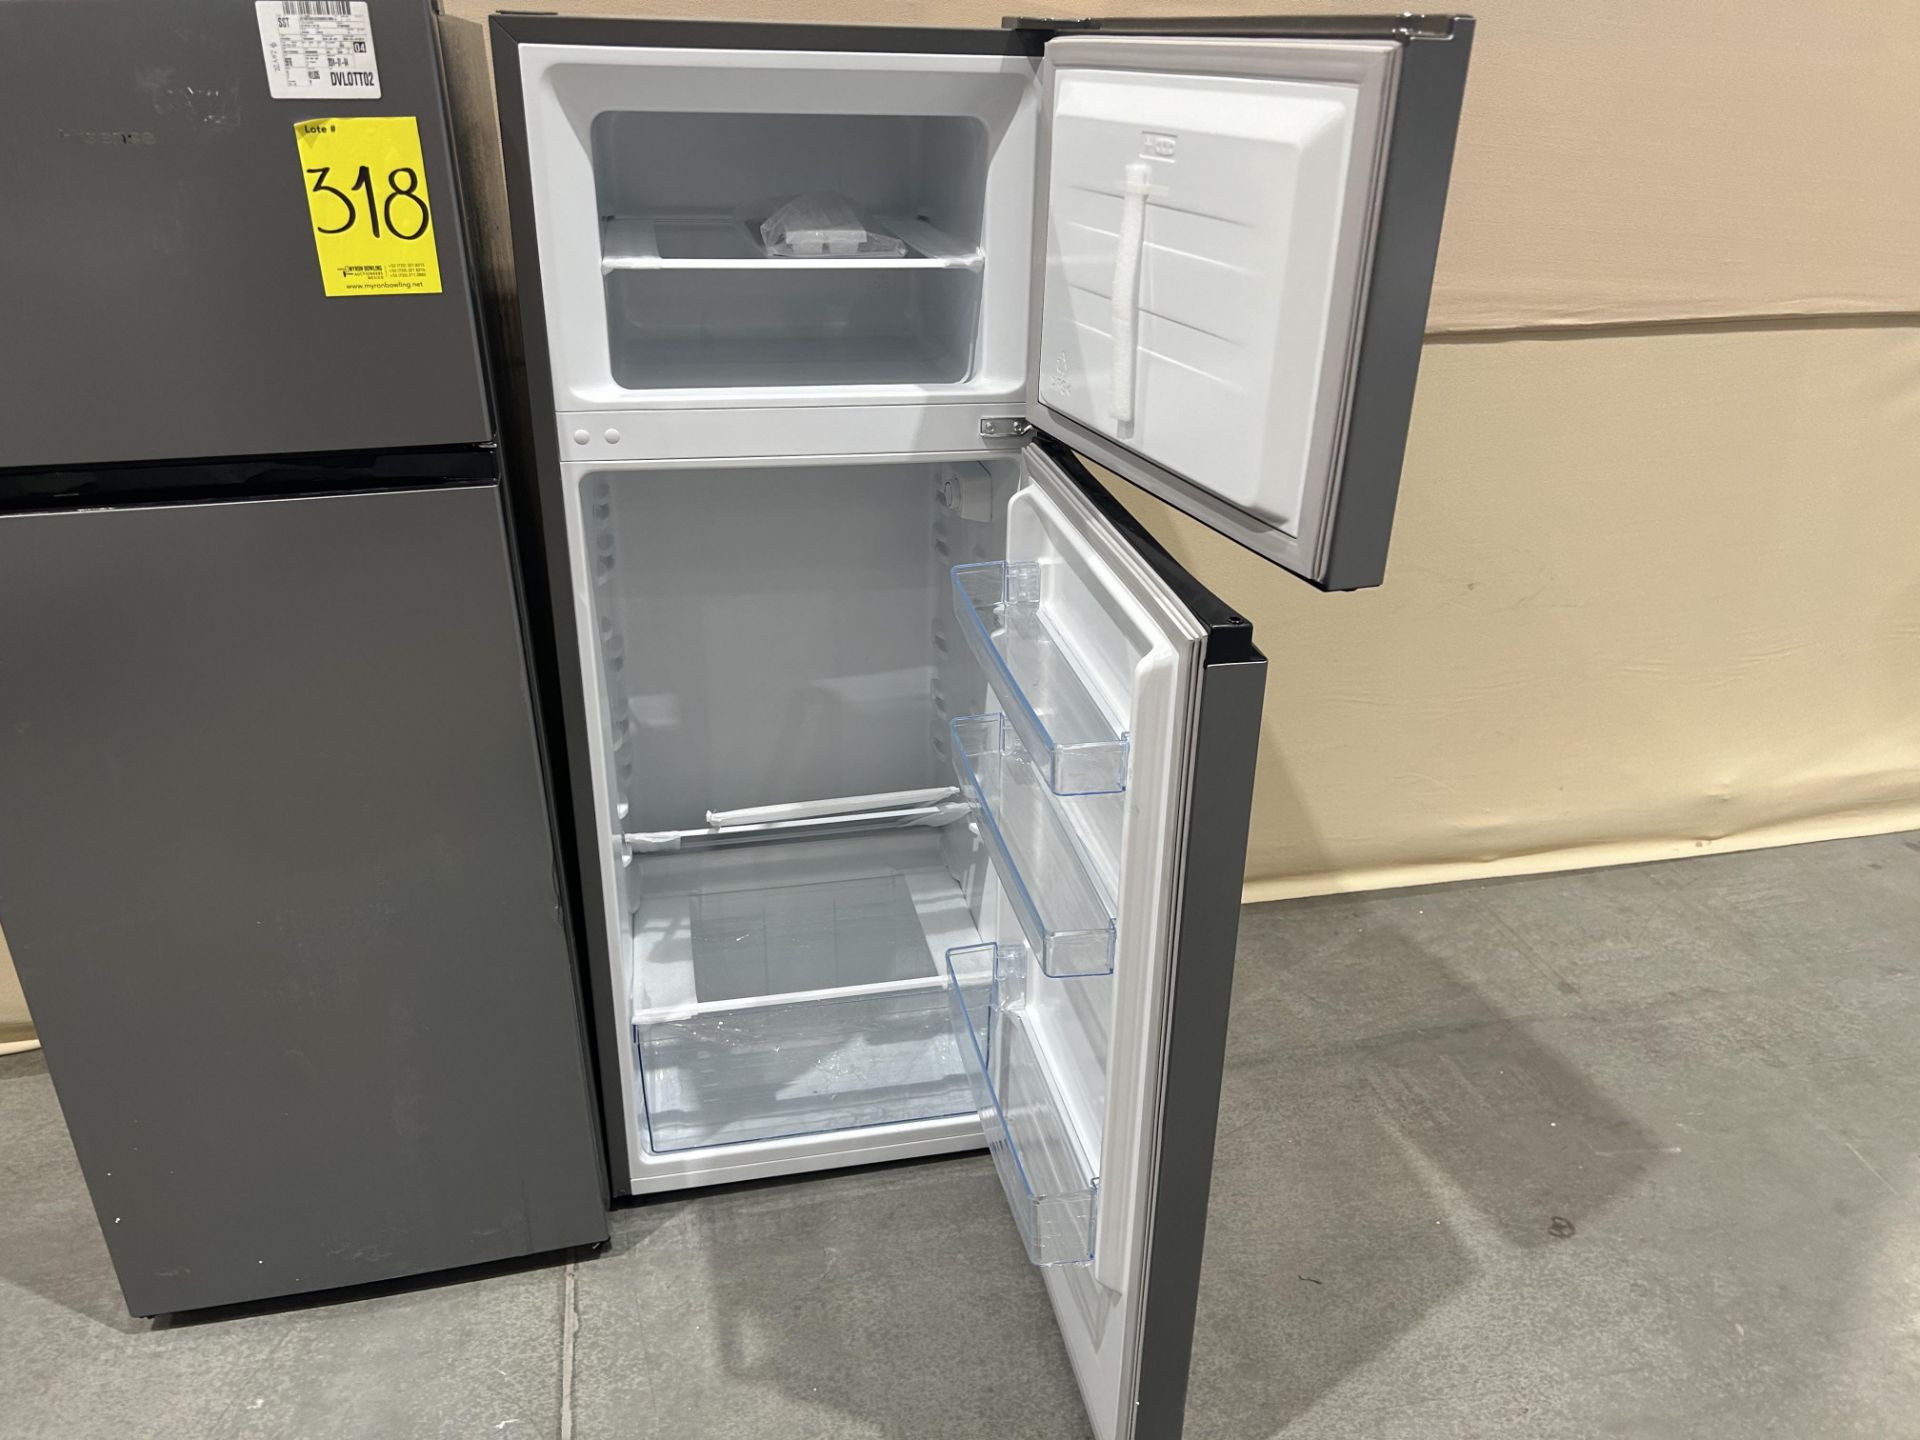 Lote de 2 refrigeradores contiene: 1 refrigerador Marca HISENSE, Modelo RT80D6AGX, Serie P10076, Co - Image 4 of 7